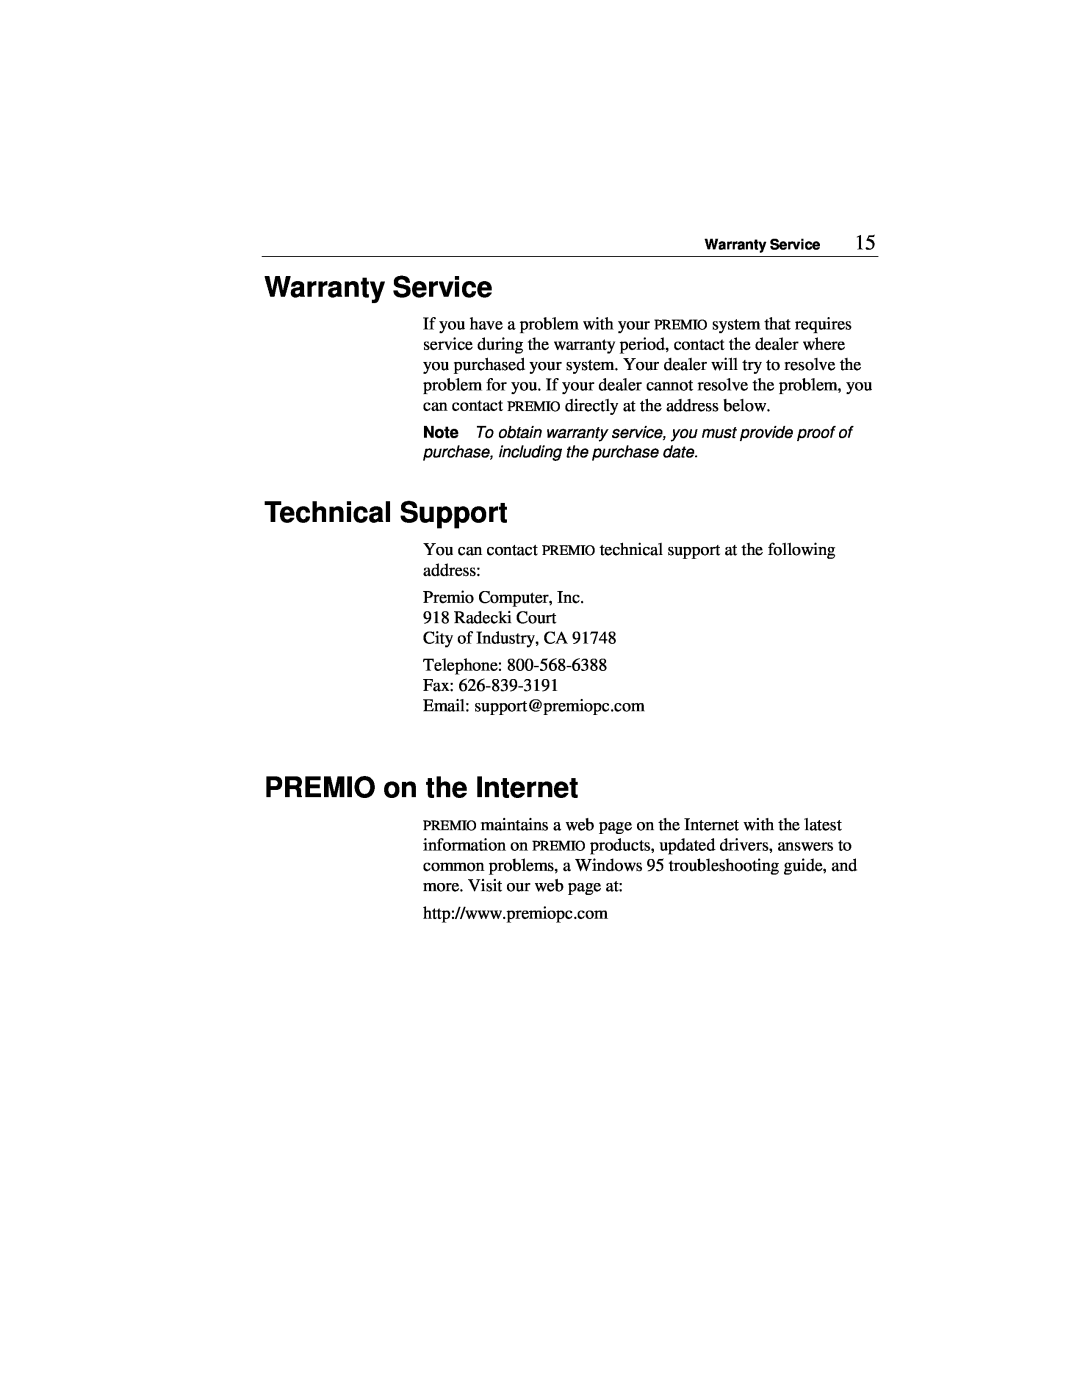 Premio Computer Apollo/Shadowhawk user manual Warranty Service, Technical Support, PREMIO on the Internet 